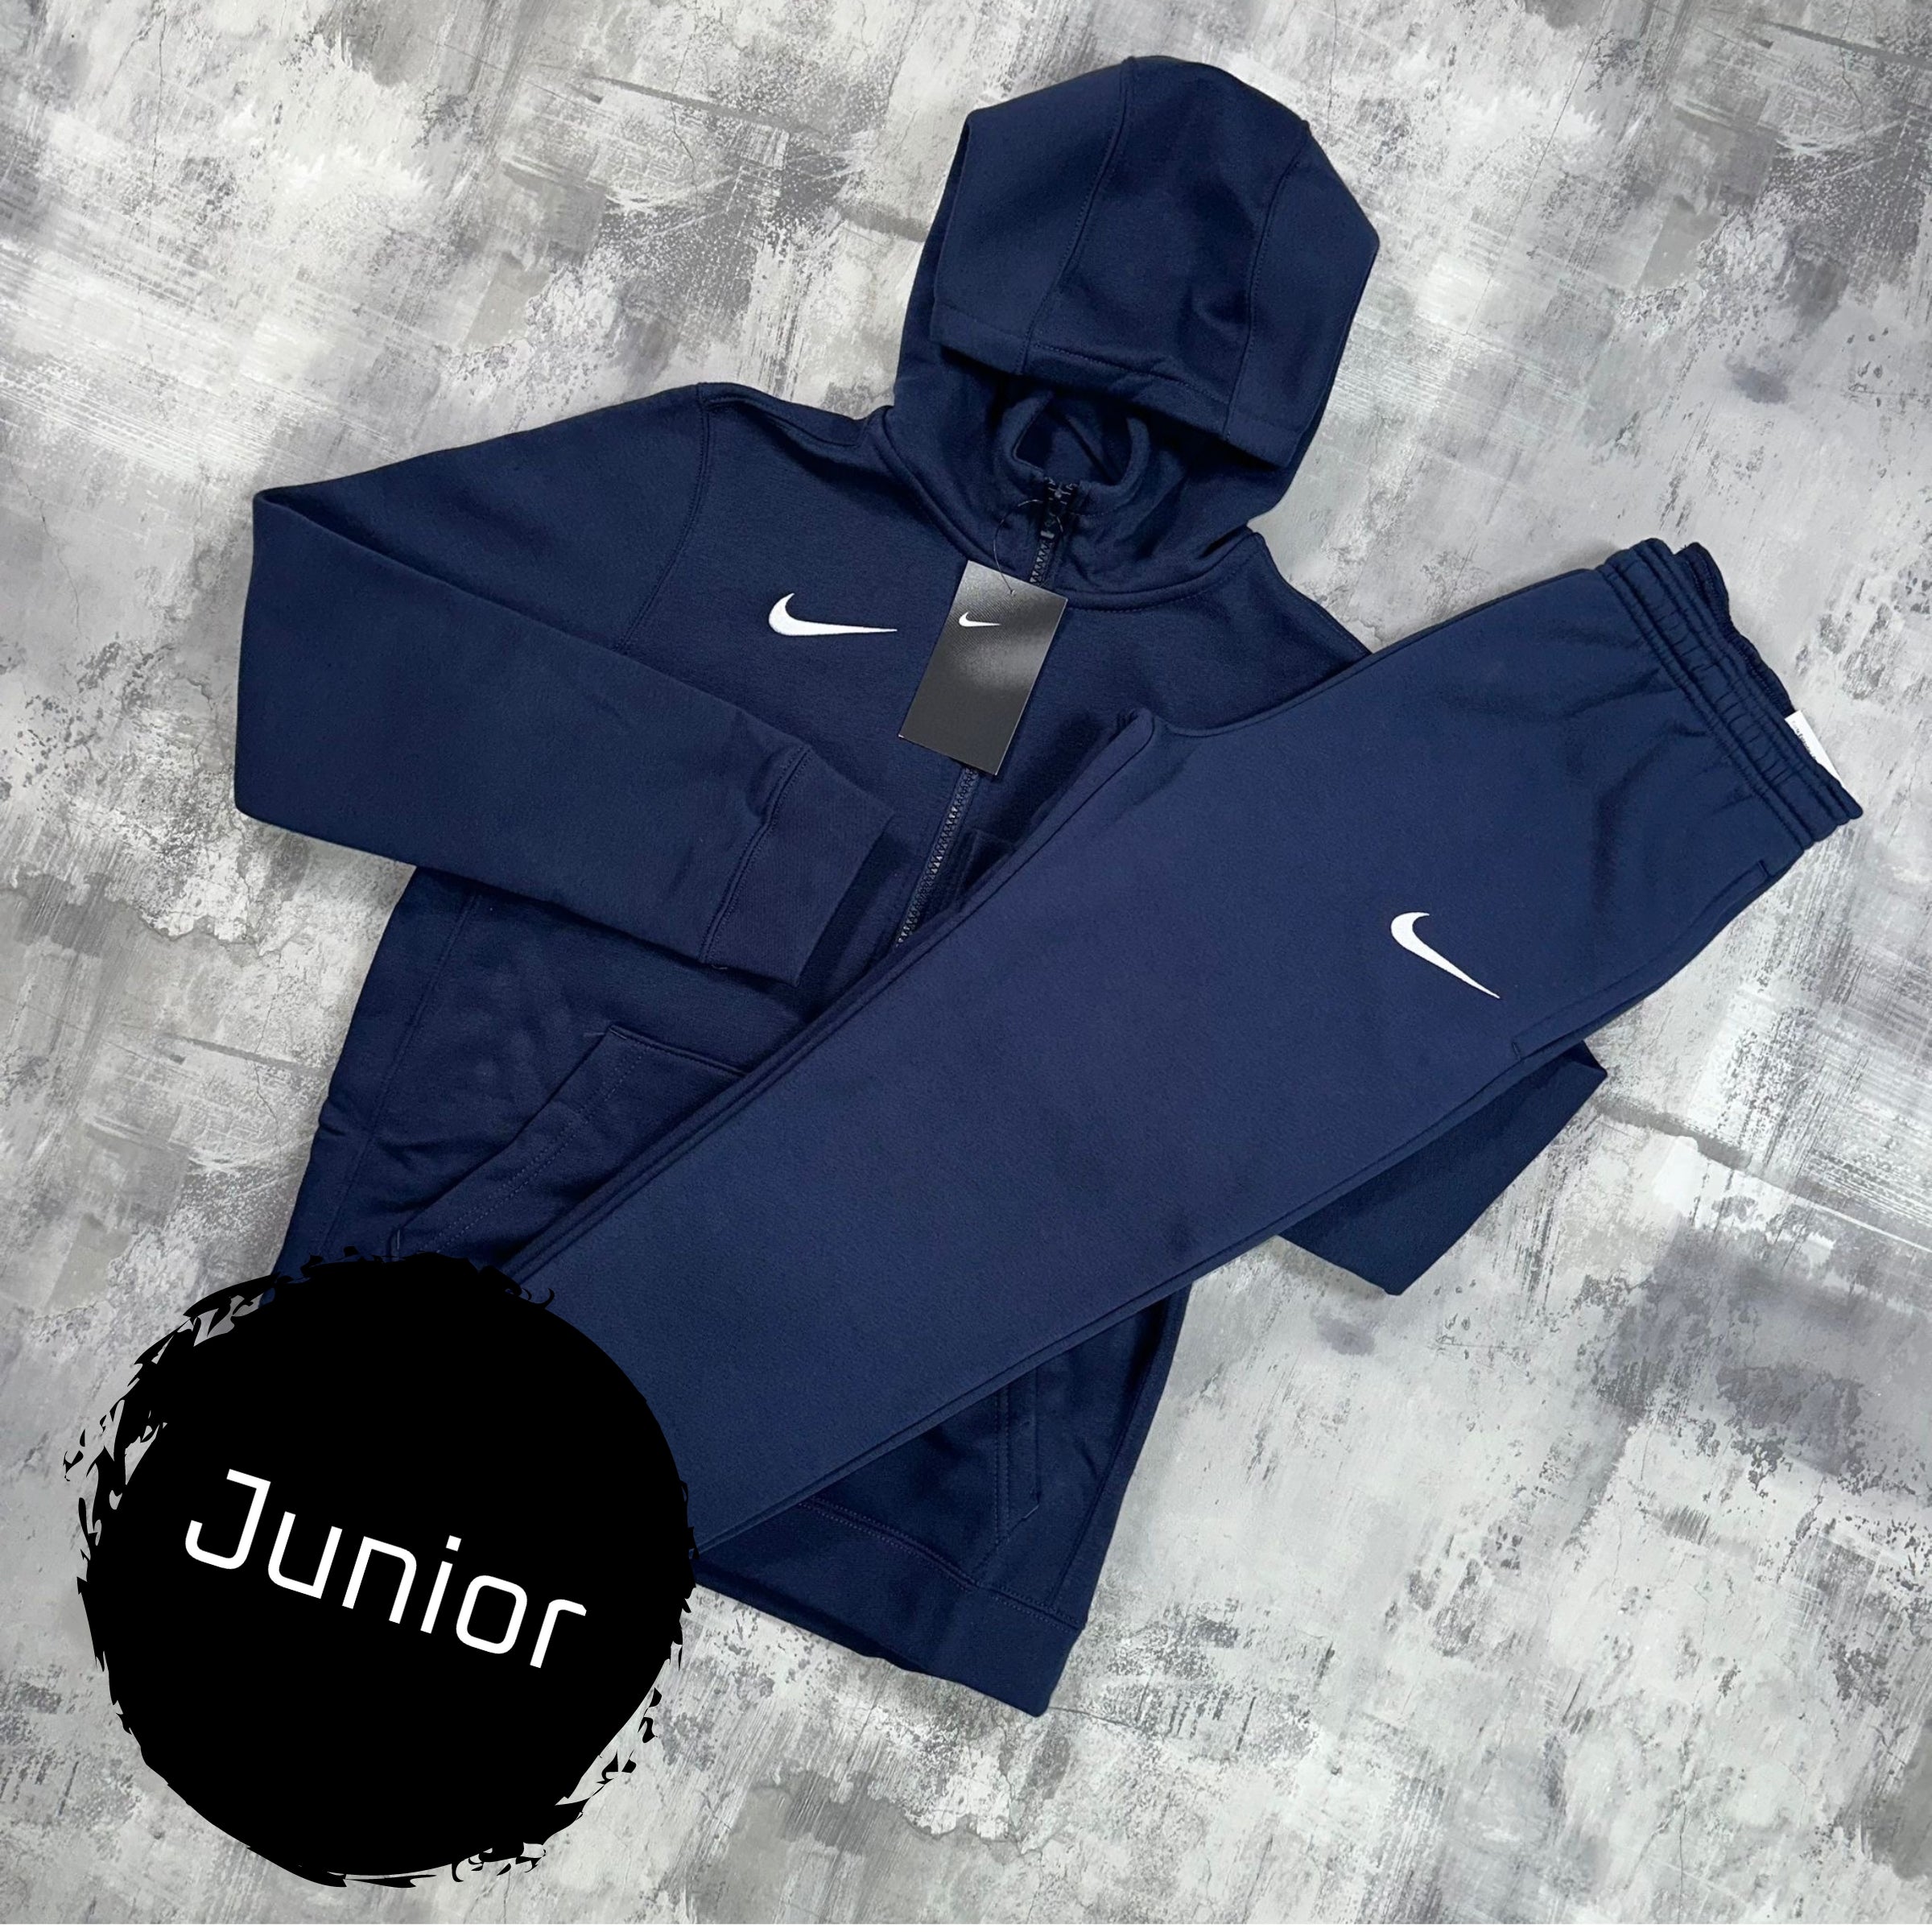 Nike Junior Fleeced set Obsidian - Full zip & Trousers